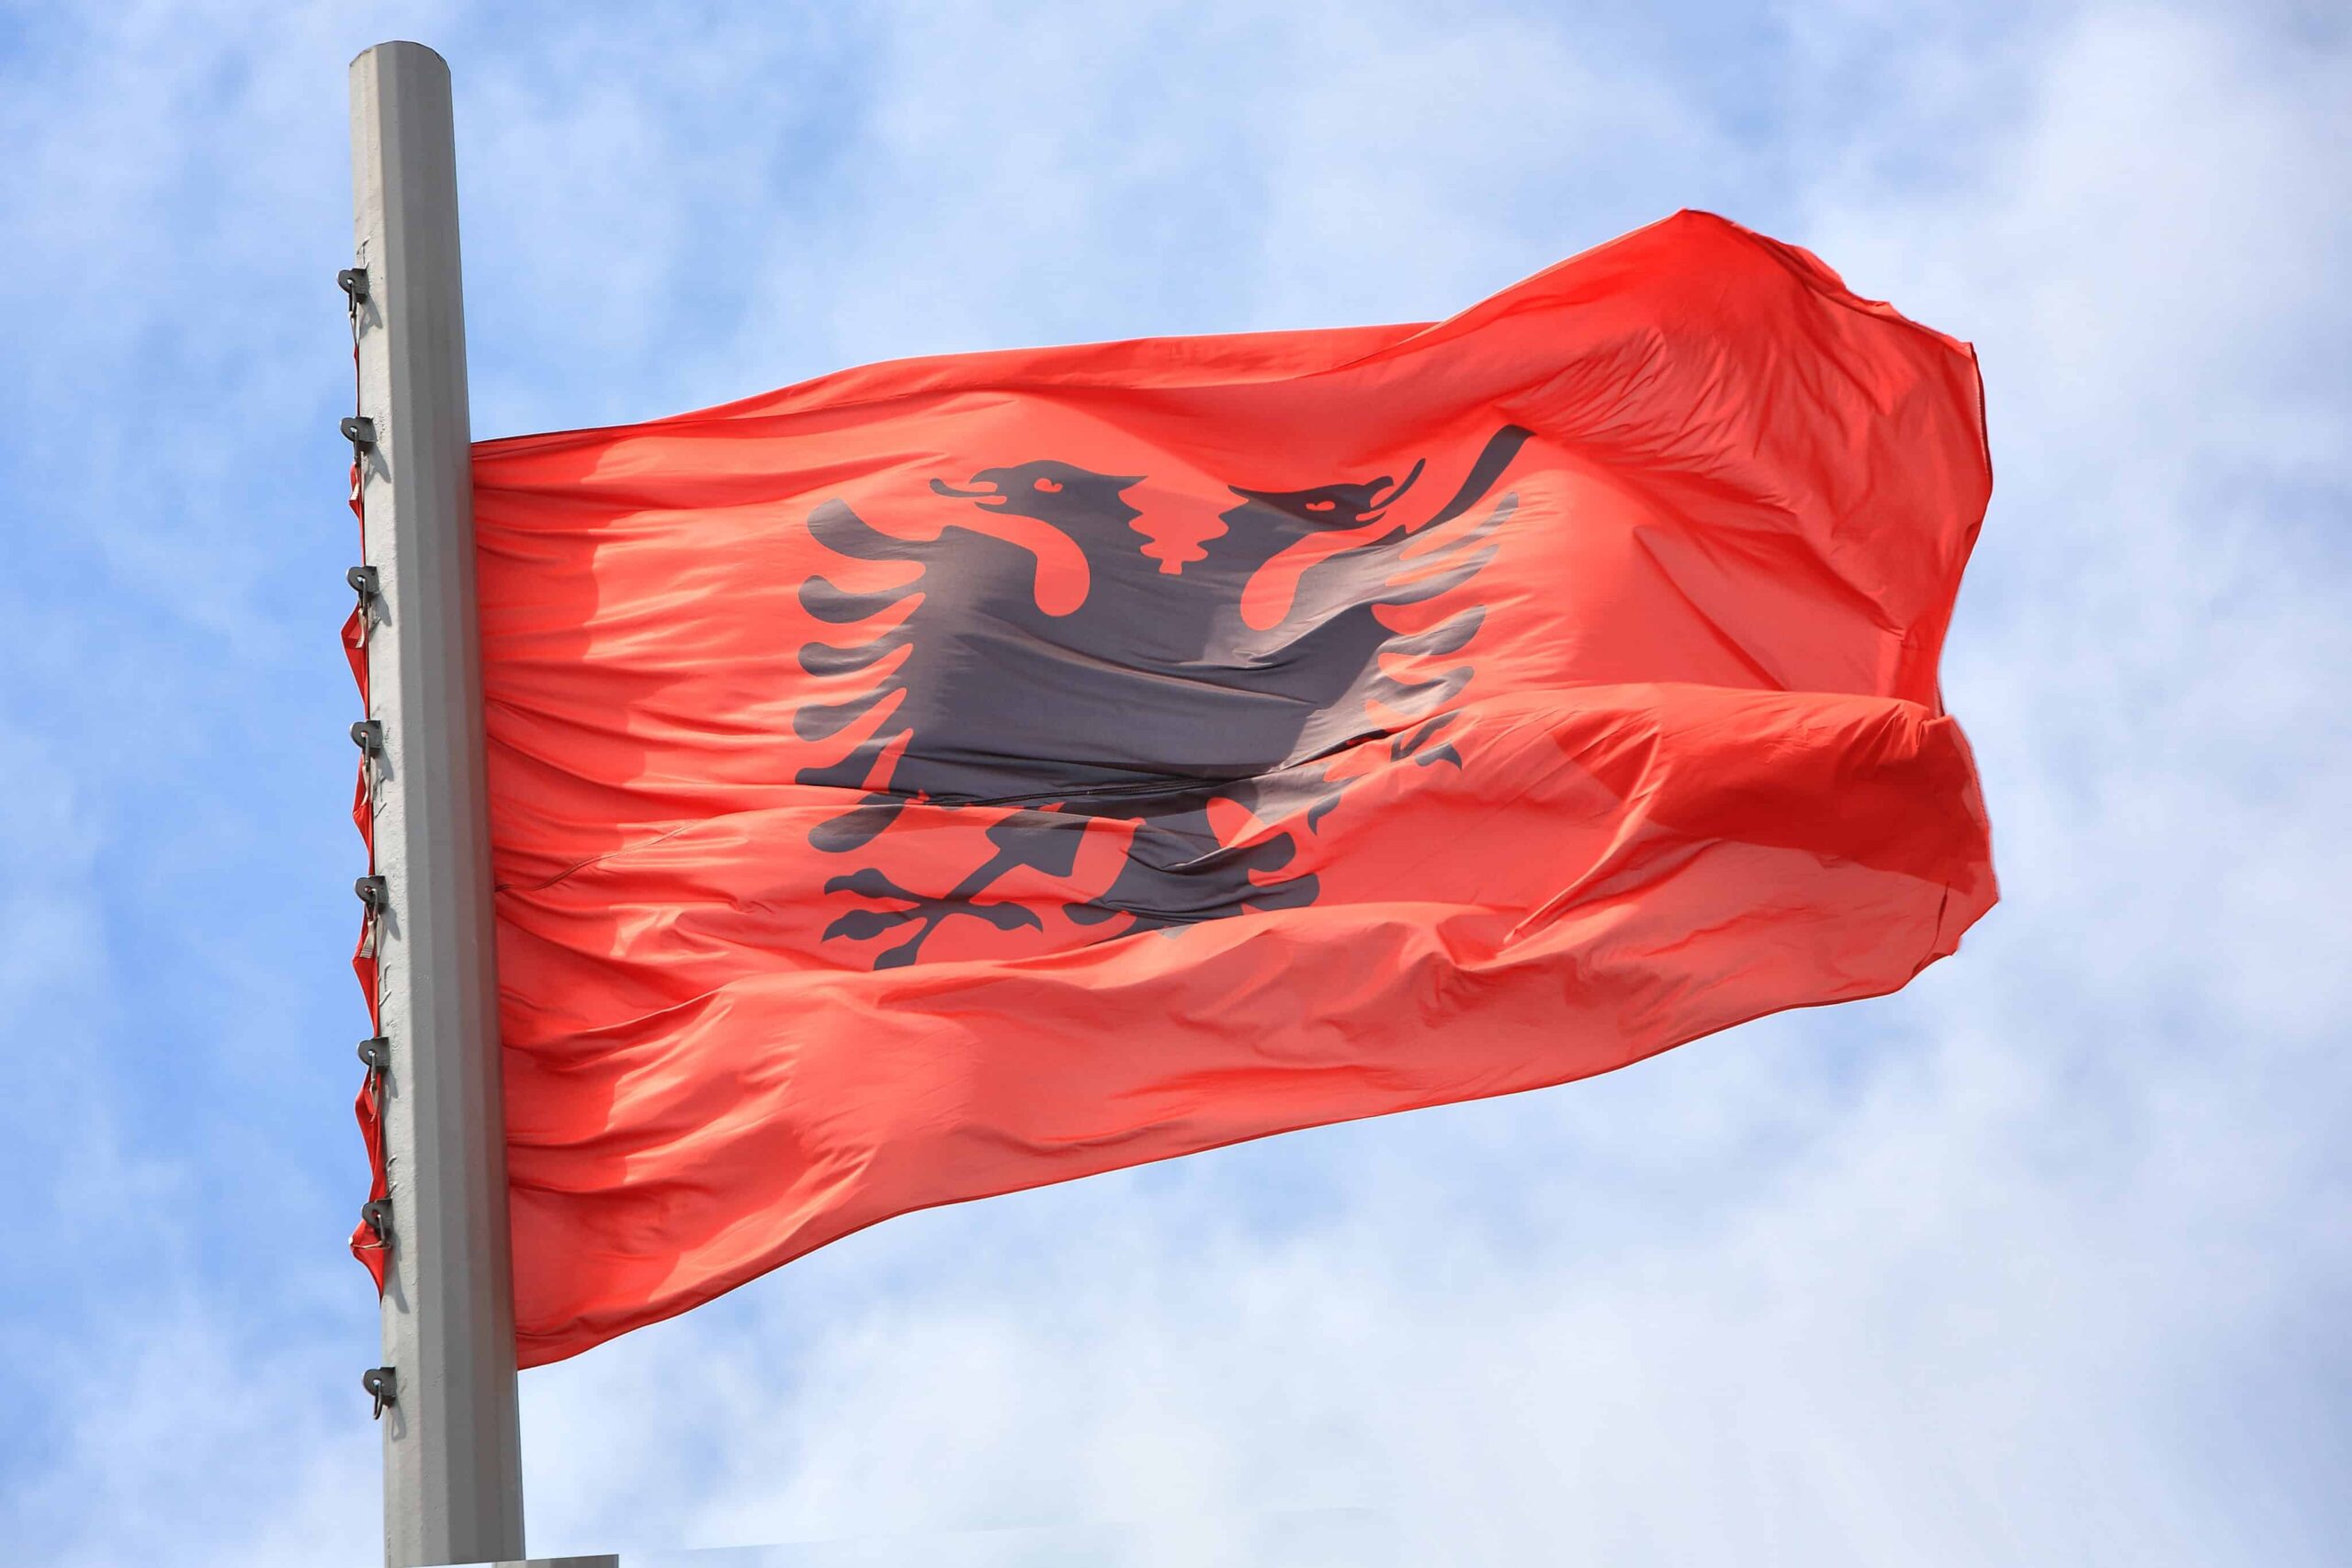 Албания легализует медицинский каннабис | Высокие времена